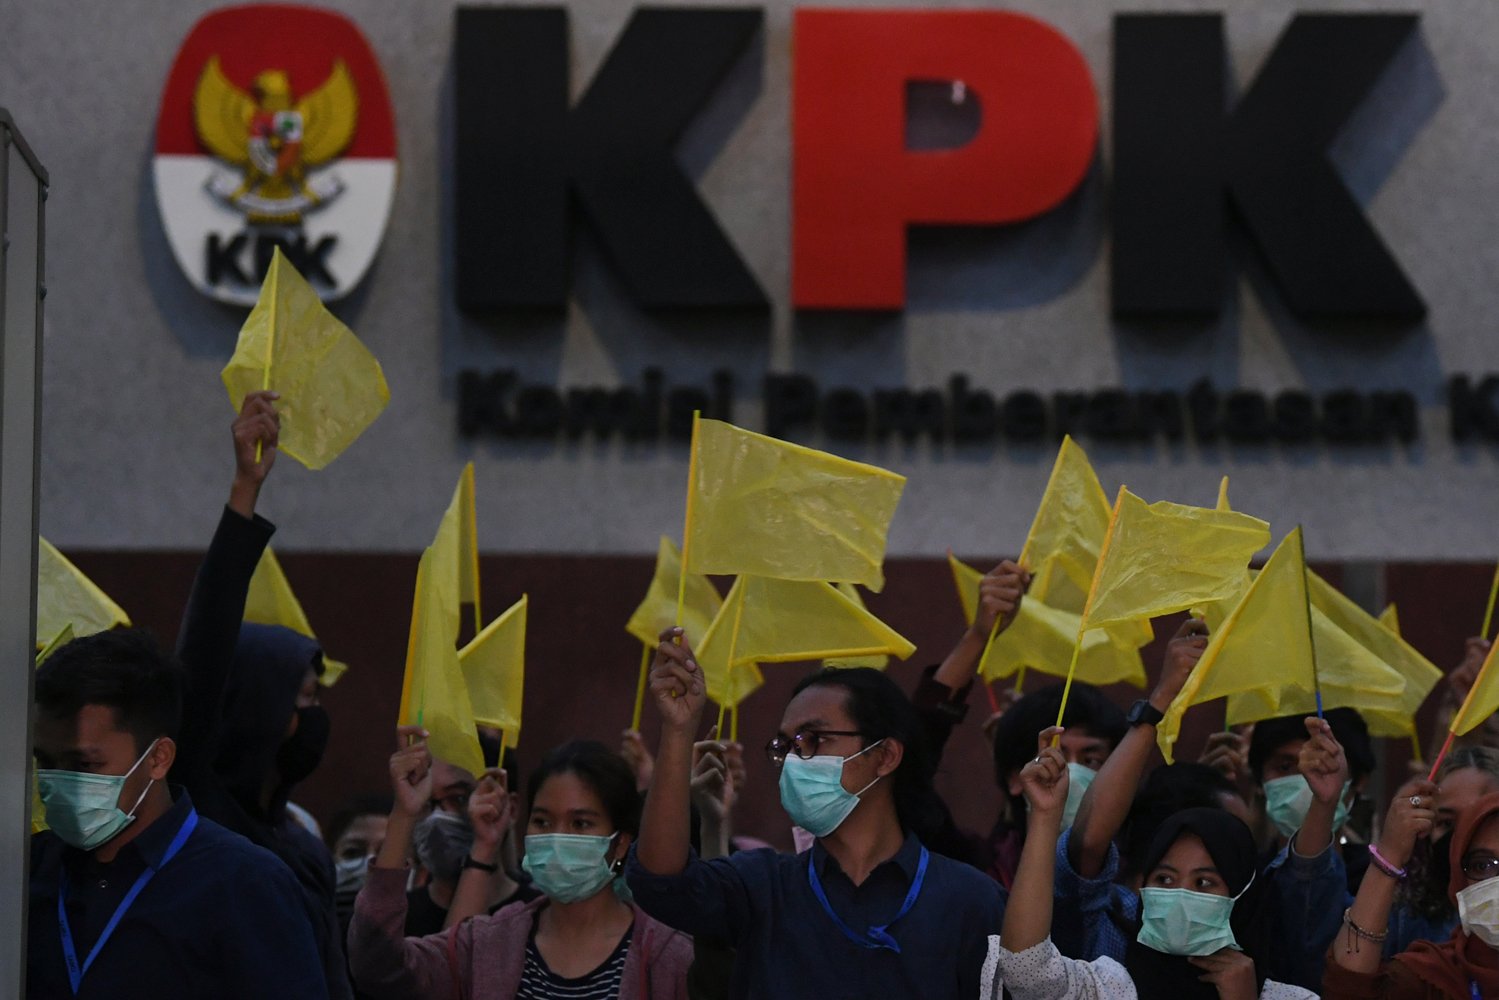 Anggota Wadah Pegawai KPK membawa bendera kuning saat melakukan aksi di gedung KPK Jakarta, Selasa (17/9/2019). Wadah Pegawai KPK dan Koalisi Masyarakat Anti Korupsi melakukan malam renungan bertajuk \